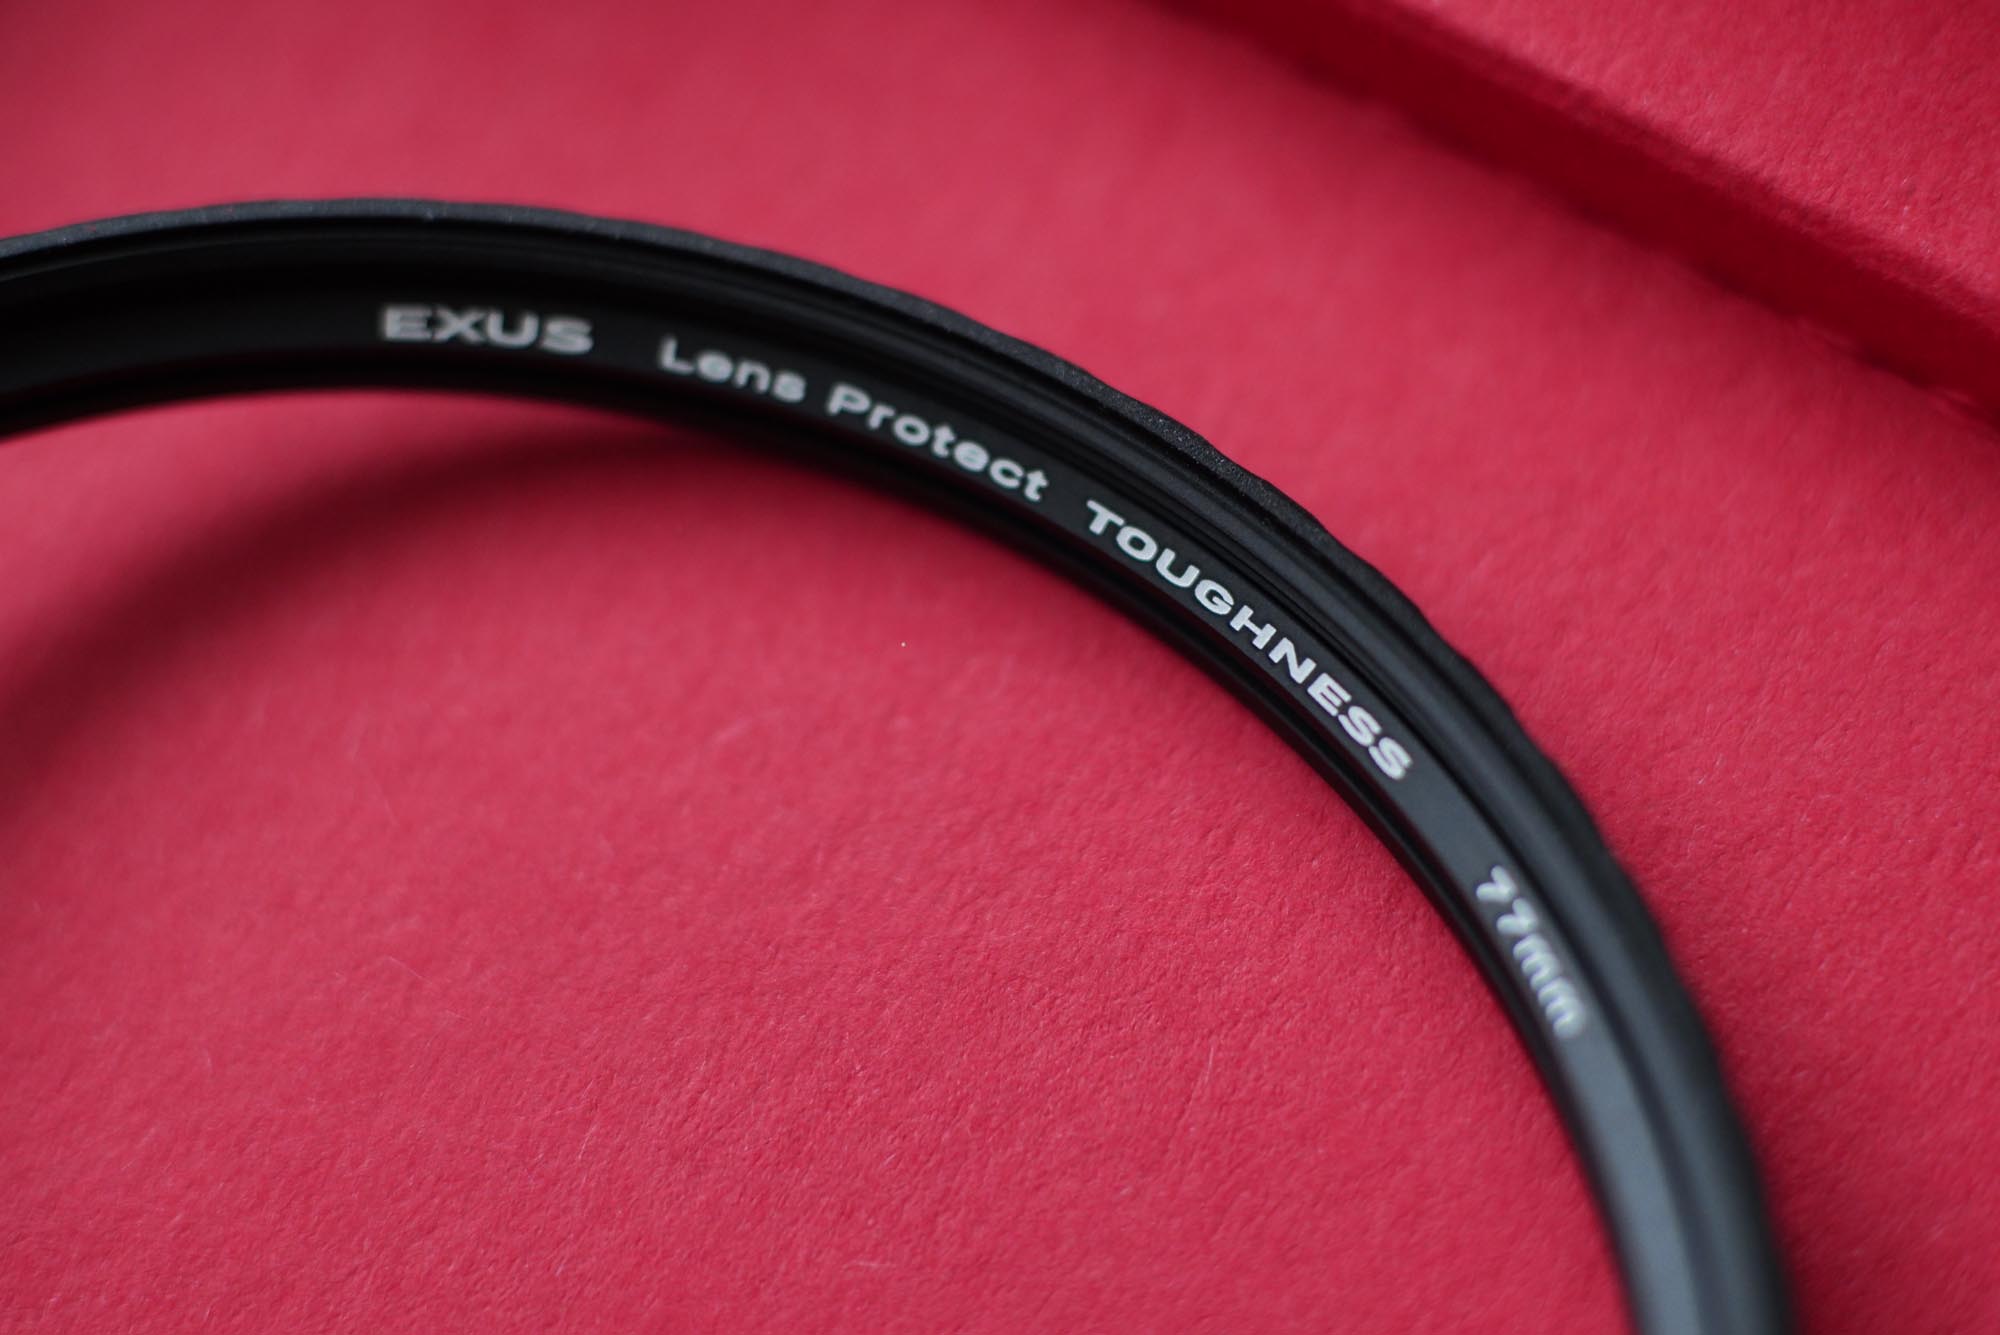 “静かな自己主張”<br><br>EXUS Lens Protect TOUGHNESS<br> Limited Edition<br><br>写真家　今泉真也